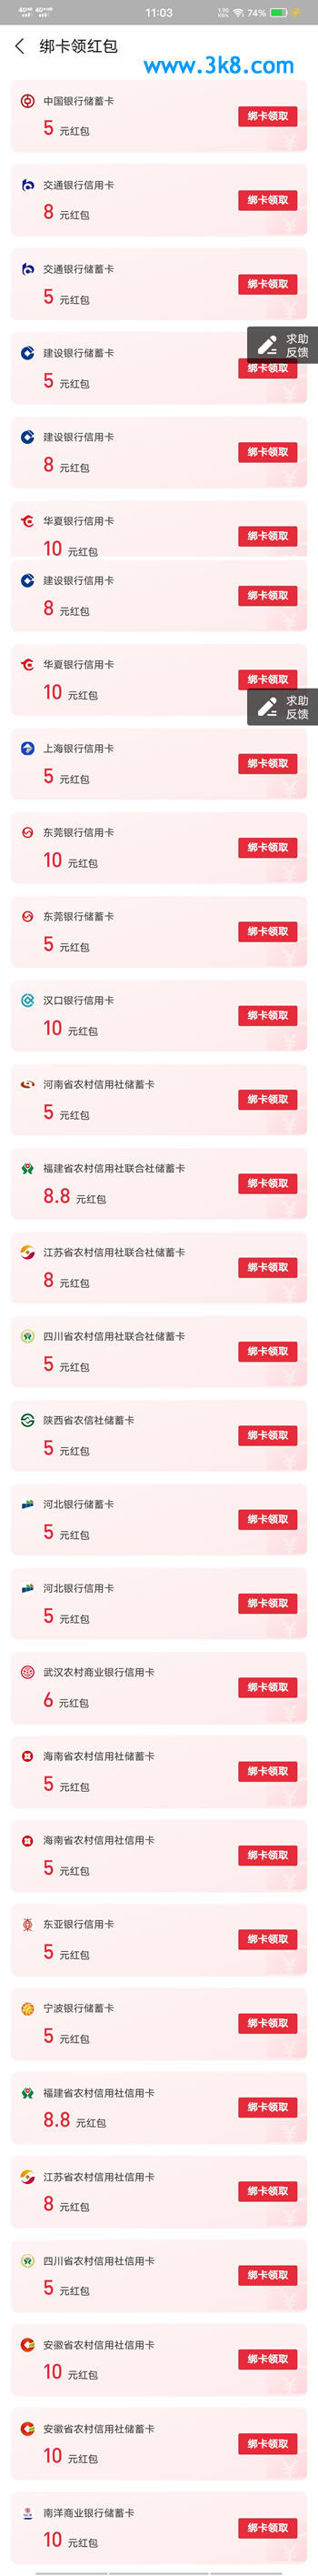 支付宝绑定杭州银行卡得8.8元支付红包 电子账户也可以绑定-惠小助(52huixz.com)